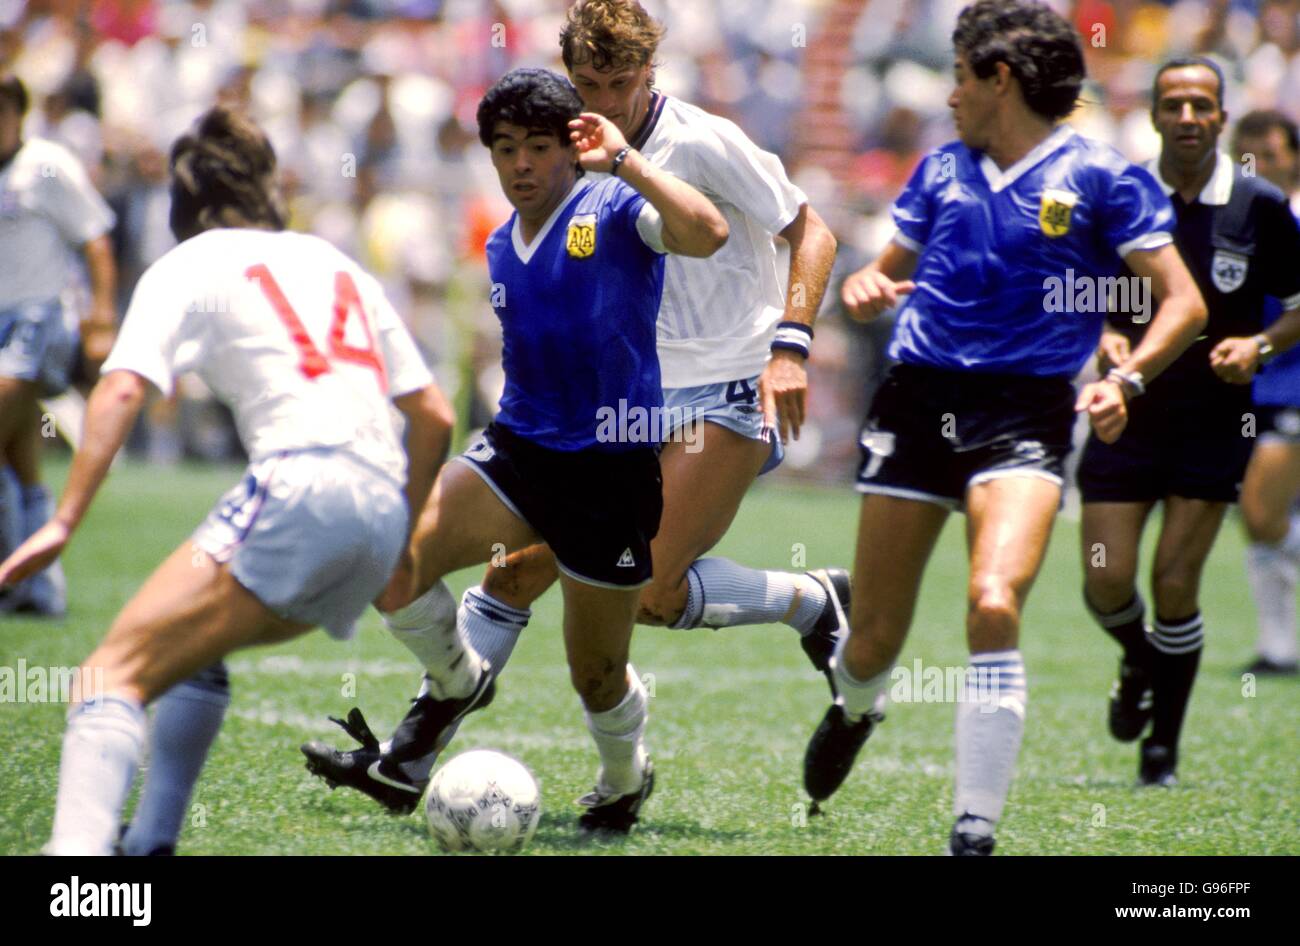 Fußball - Welt Cup Mexiko 1986 - Viertel Finale - Argentinien V England  Stockfotografie - Alamy